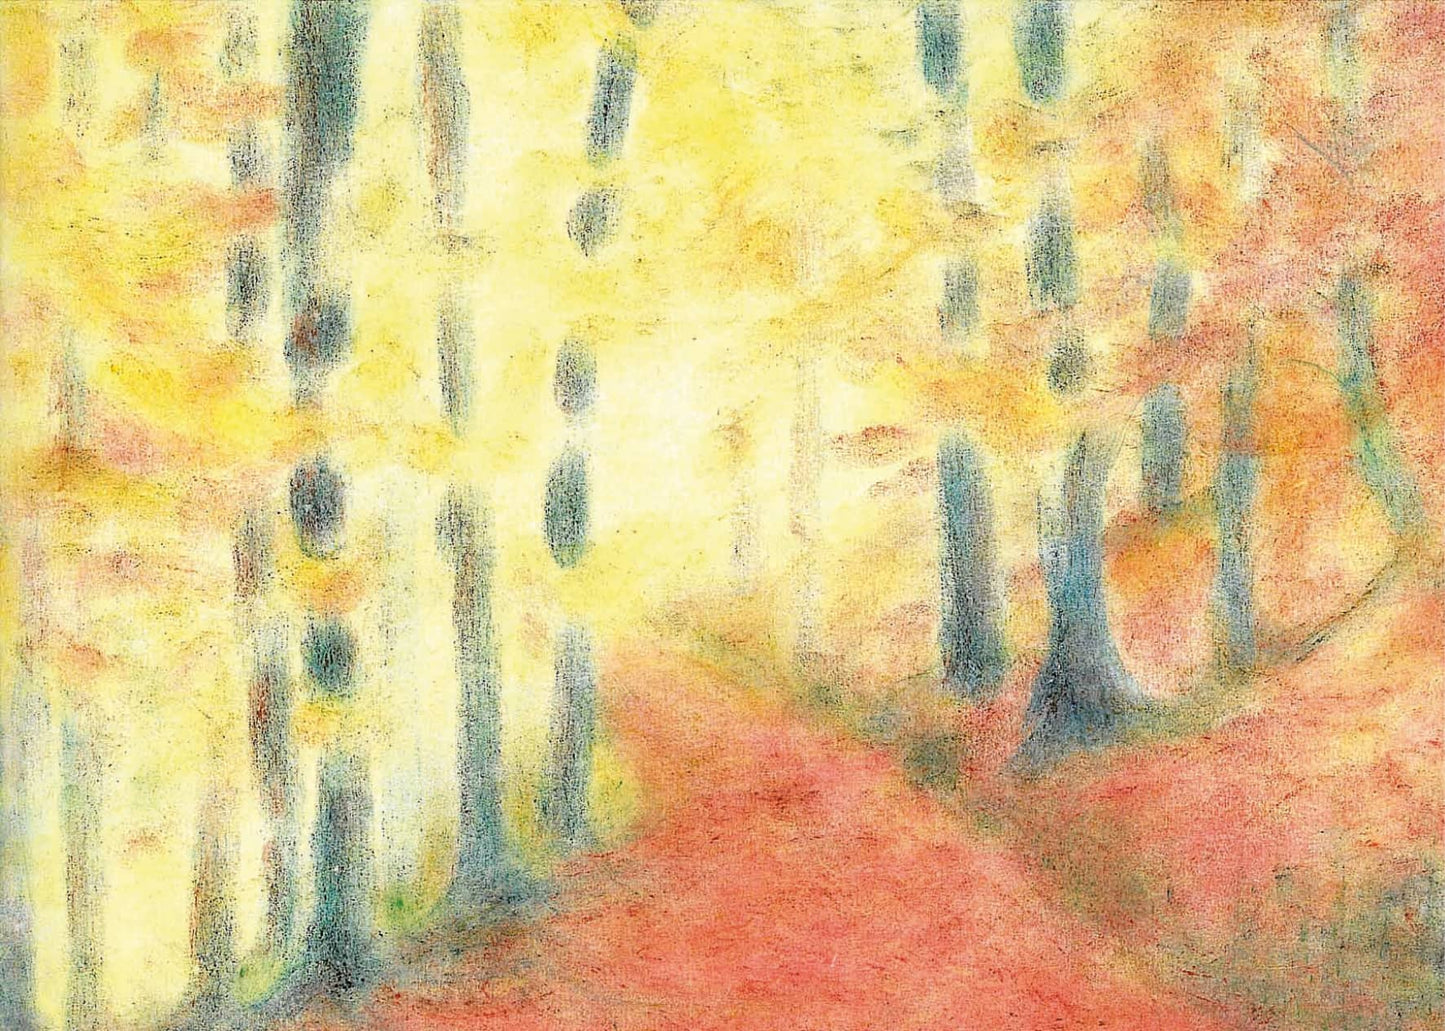 Seccorell-Postkarte "Herbstwald" mit impressionistischem Waldmotiv in herbstlichen Farbtönen.